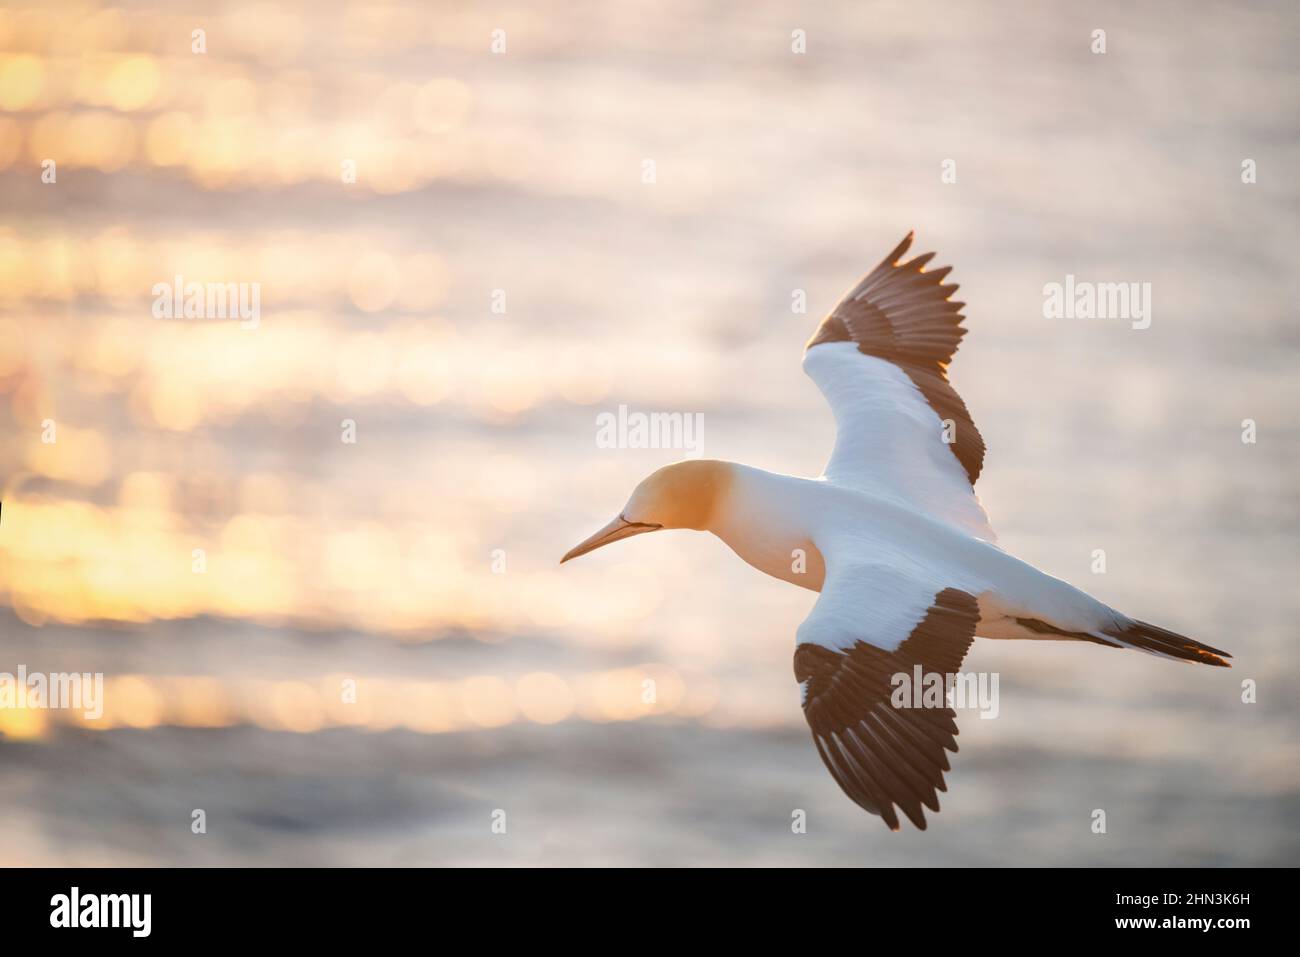 Gannet-Vogel im Flug, Sonnenstrahlen funkeln auf dem Meerwasser bei Sonnenuntergang. Muriwai Gannet Colony, Auckland. Stockfoto